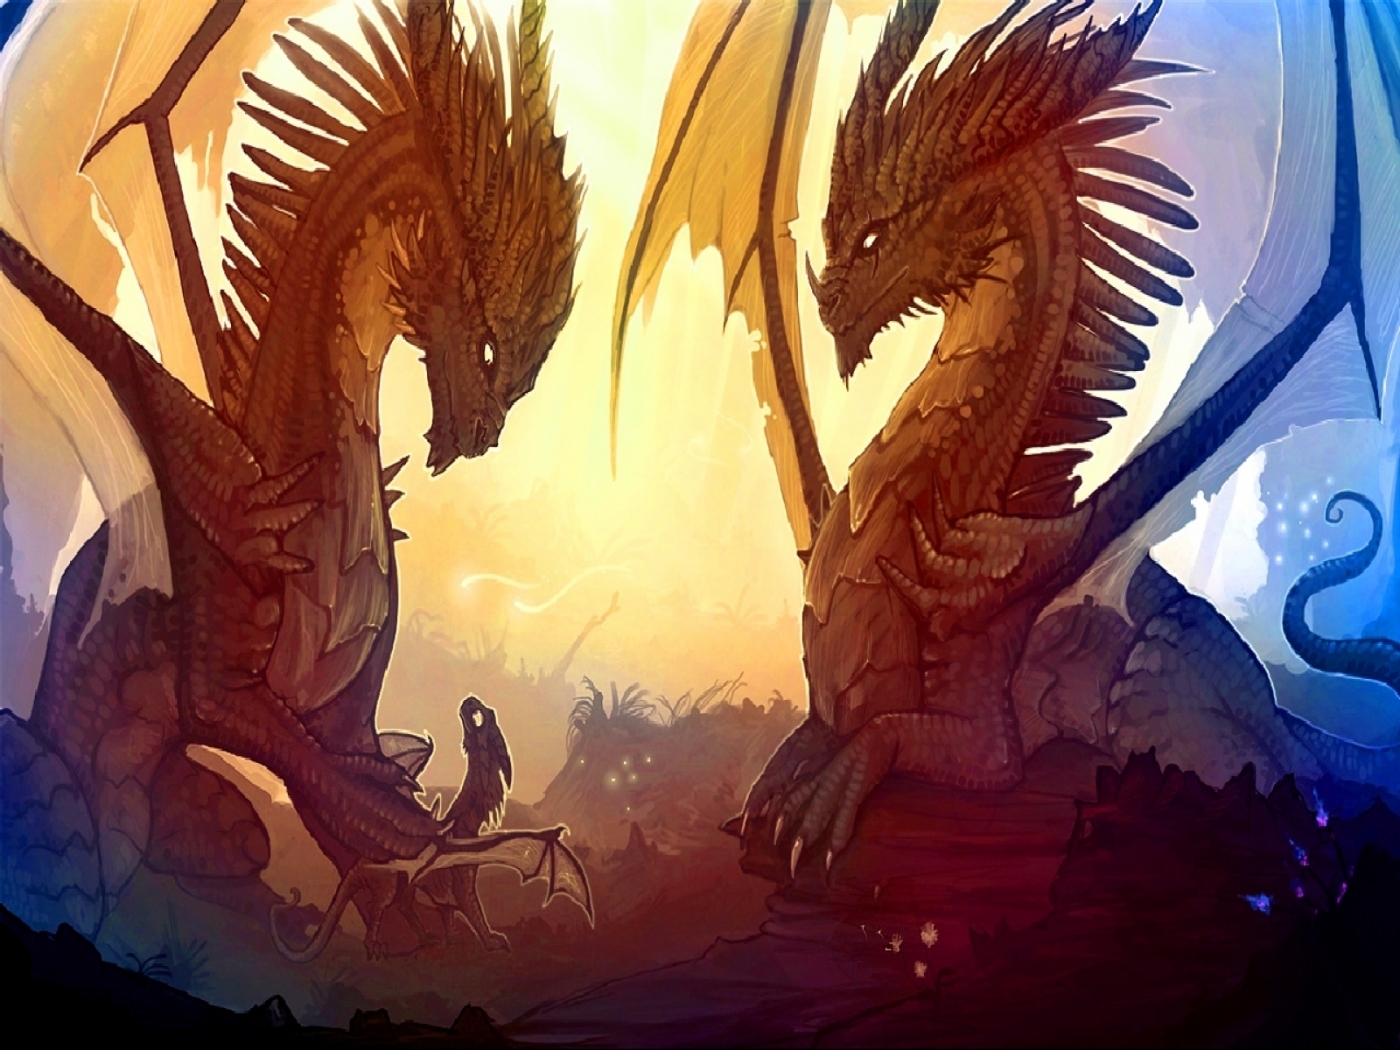 Descarga gratuita de fondo de pantalla para móvil de Fantasía, Dragones.